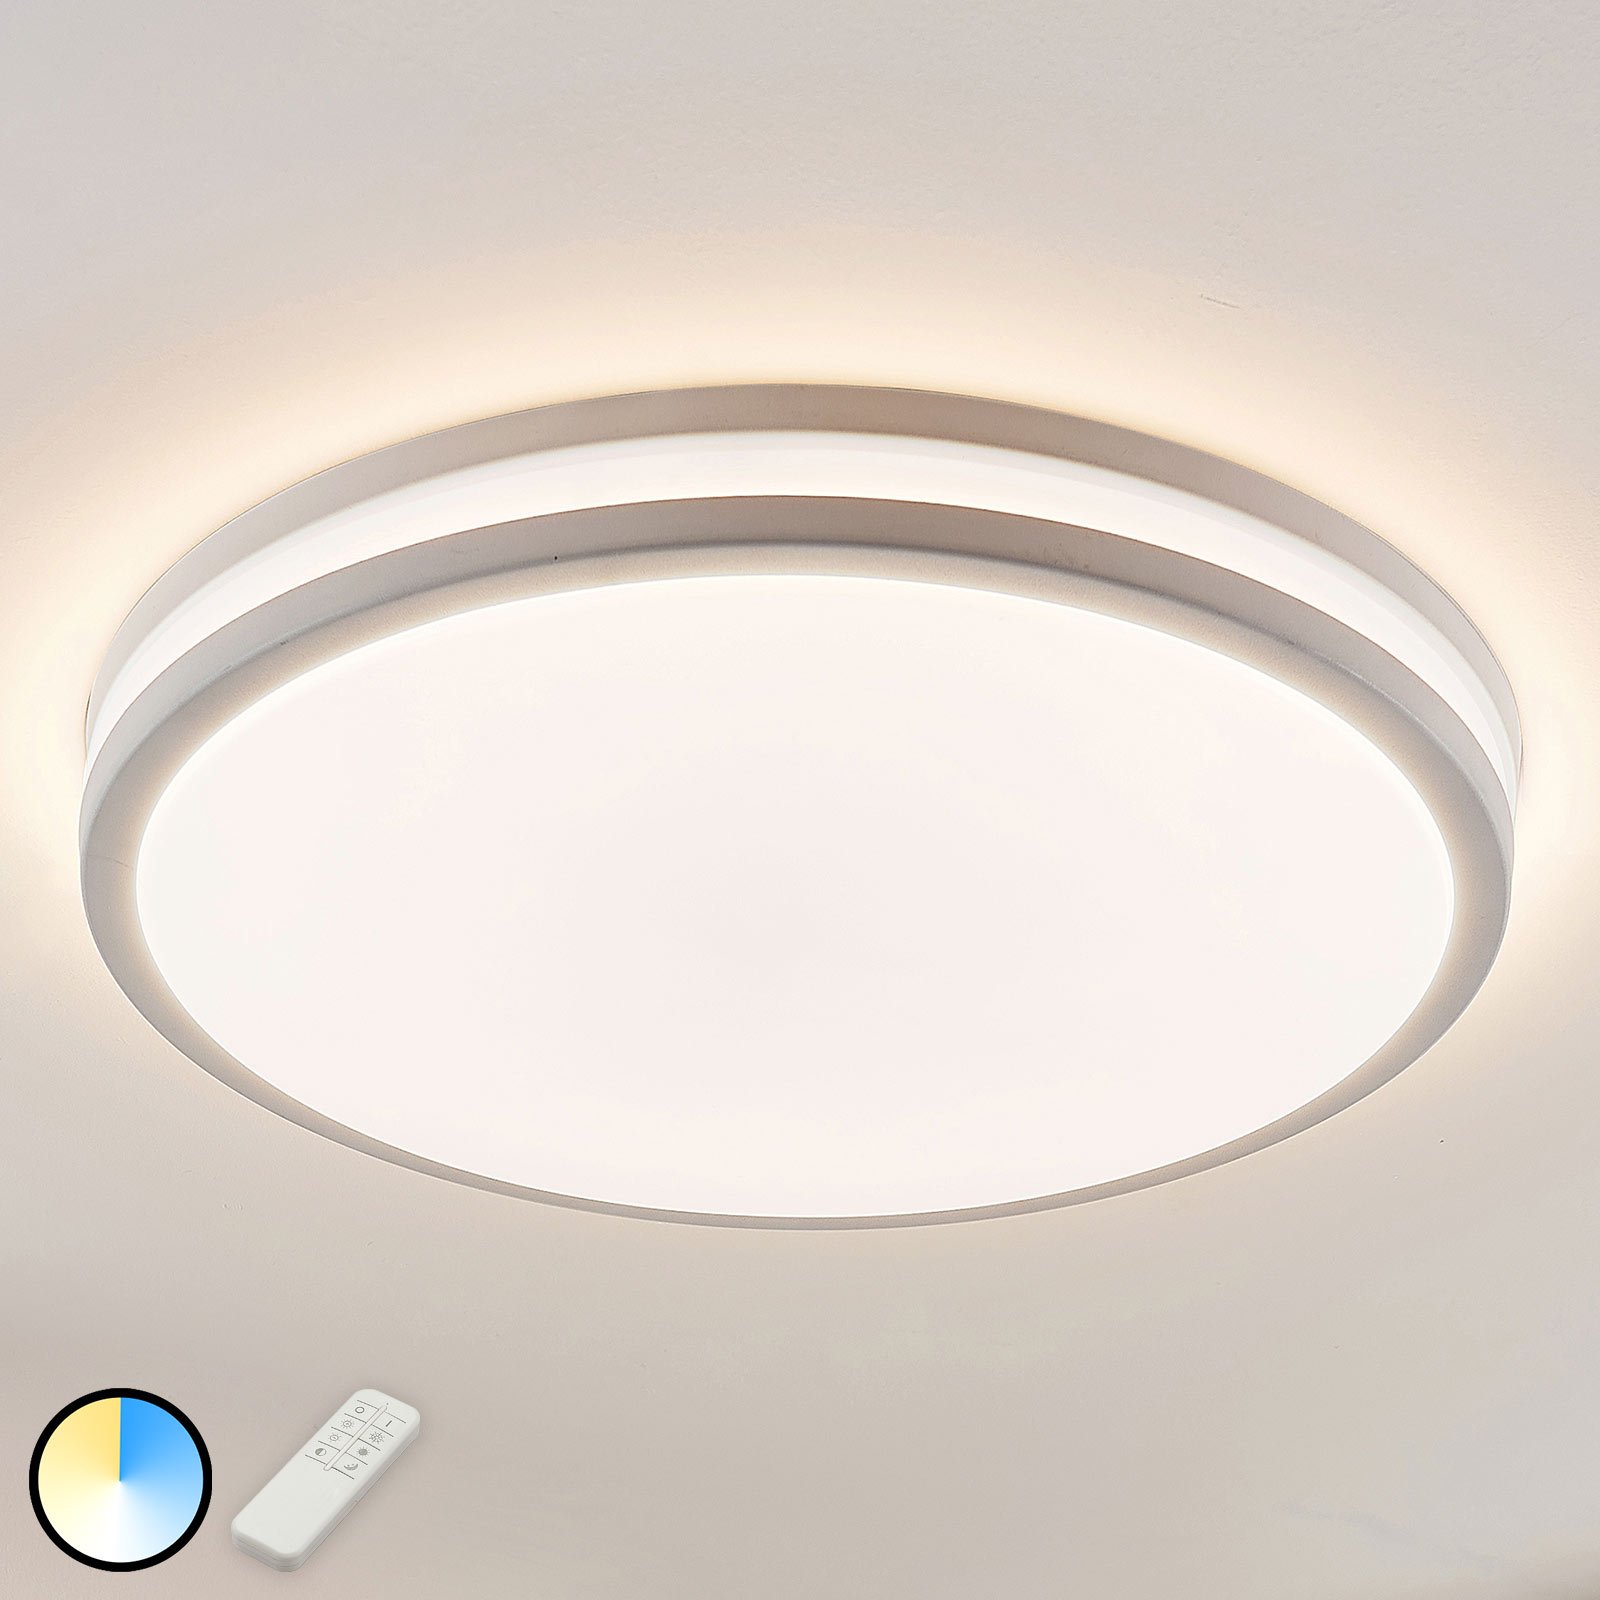 LED-taklampe Arnim i hvitt og rund form